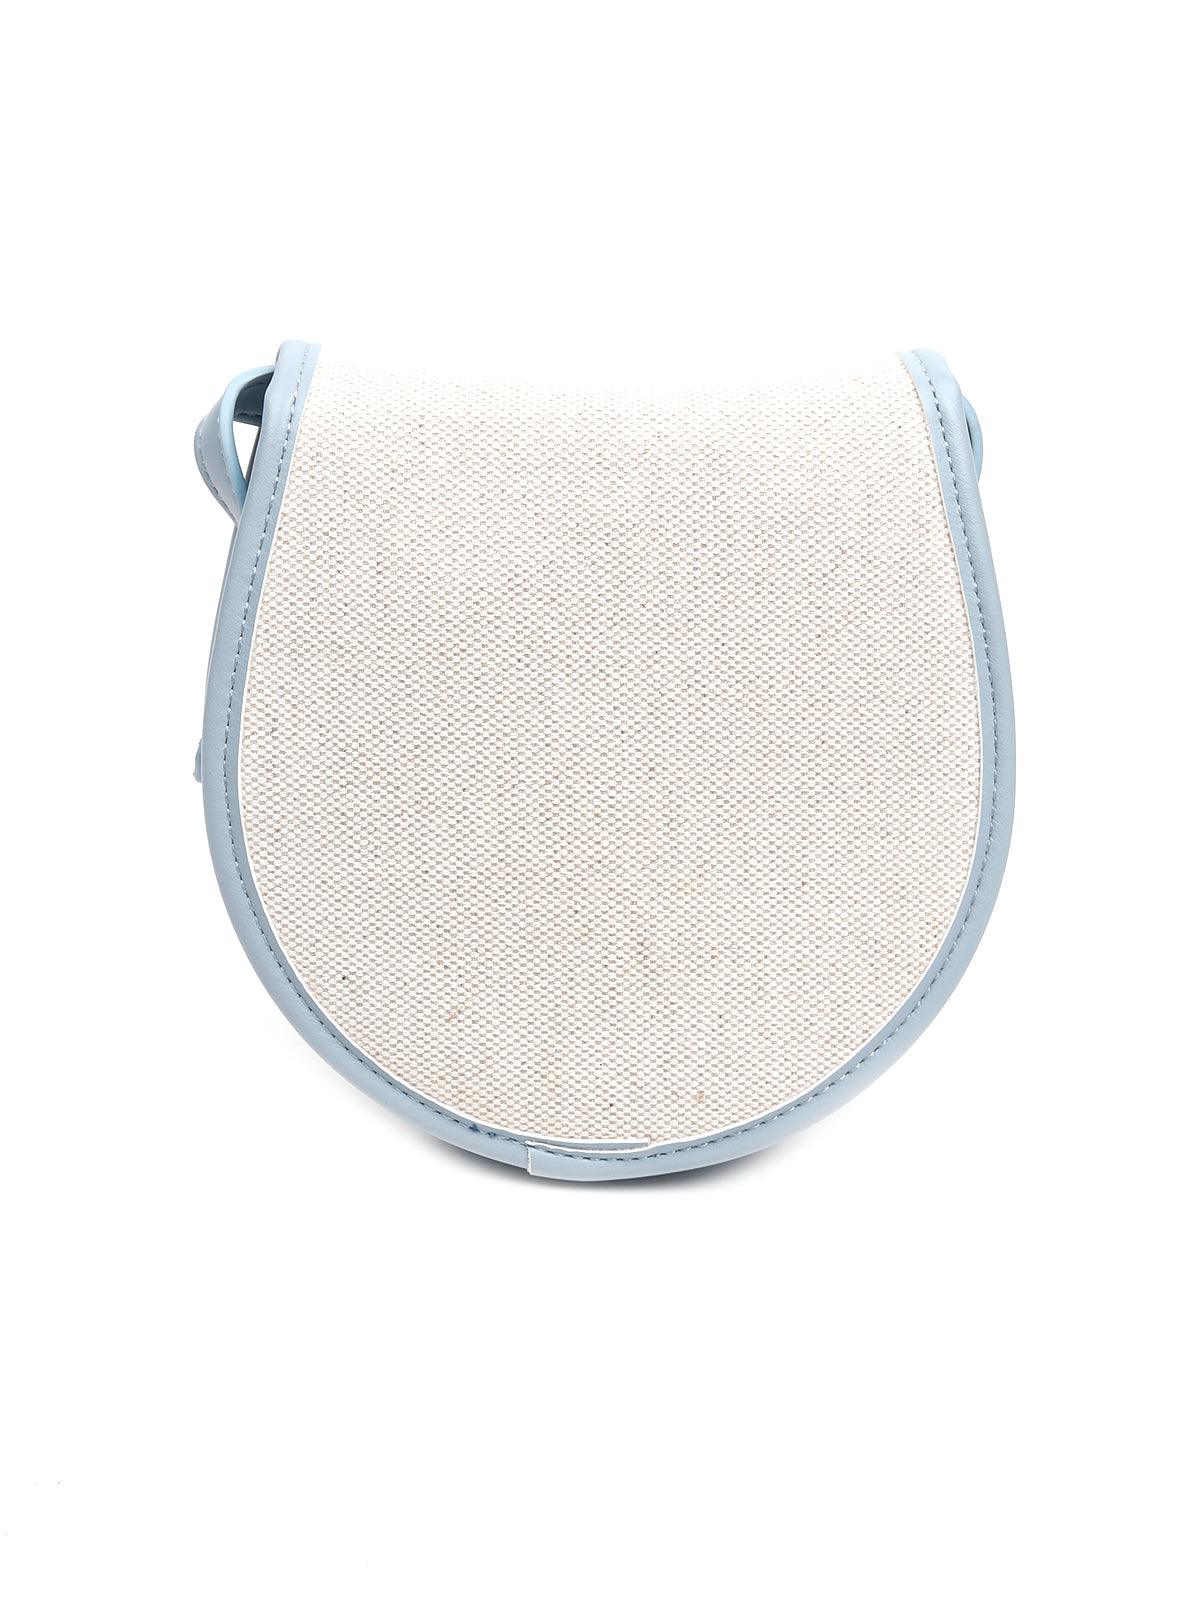 Solid Dusk blue sling bag - Odette